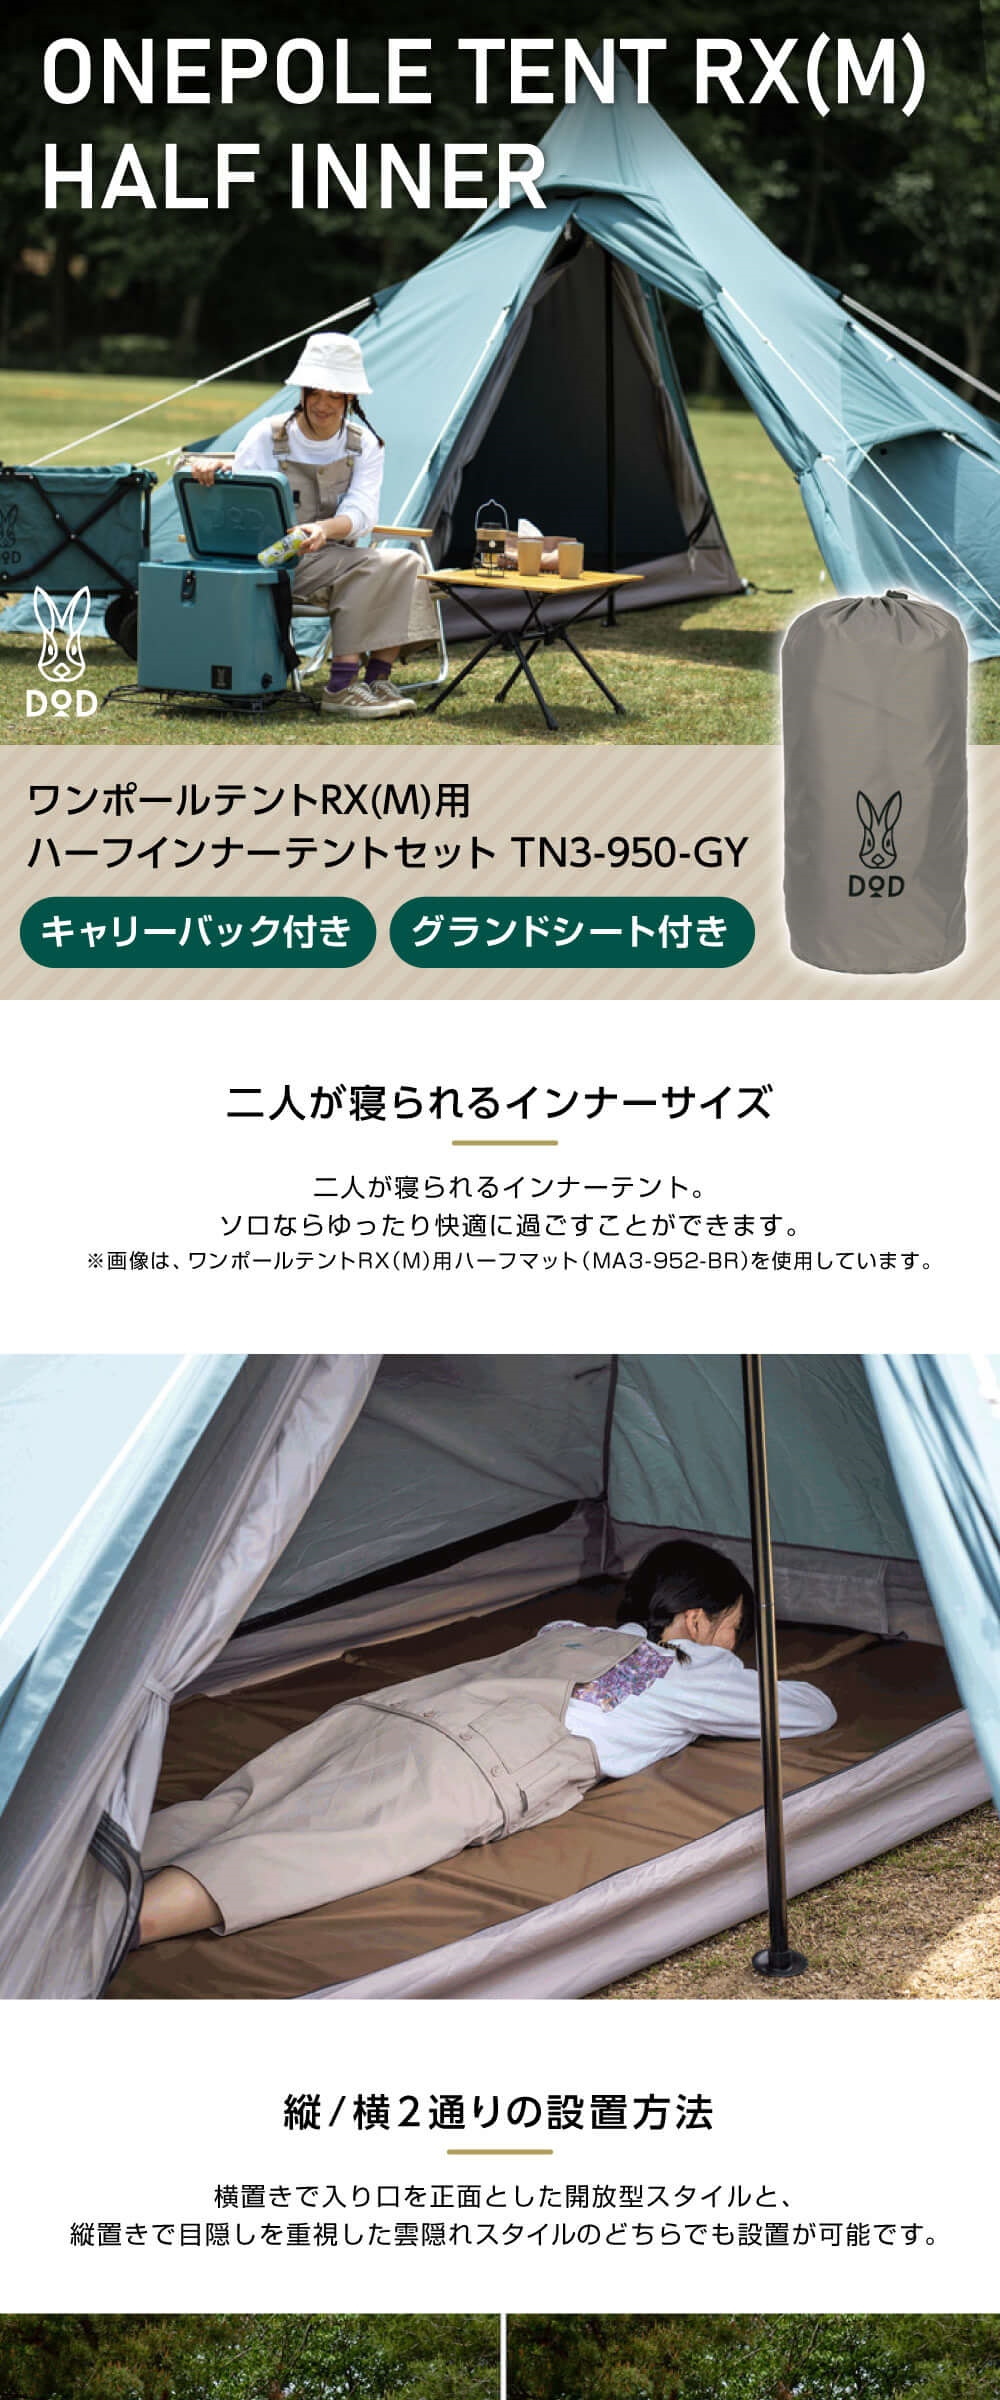 DOD テント ワンポールテントRX M 用ハーフインナーテントセット TN3 